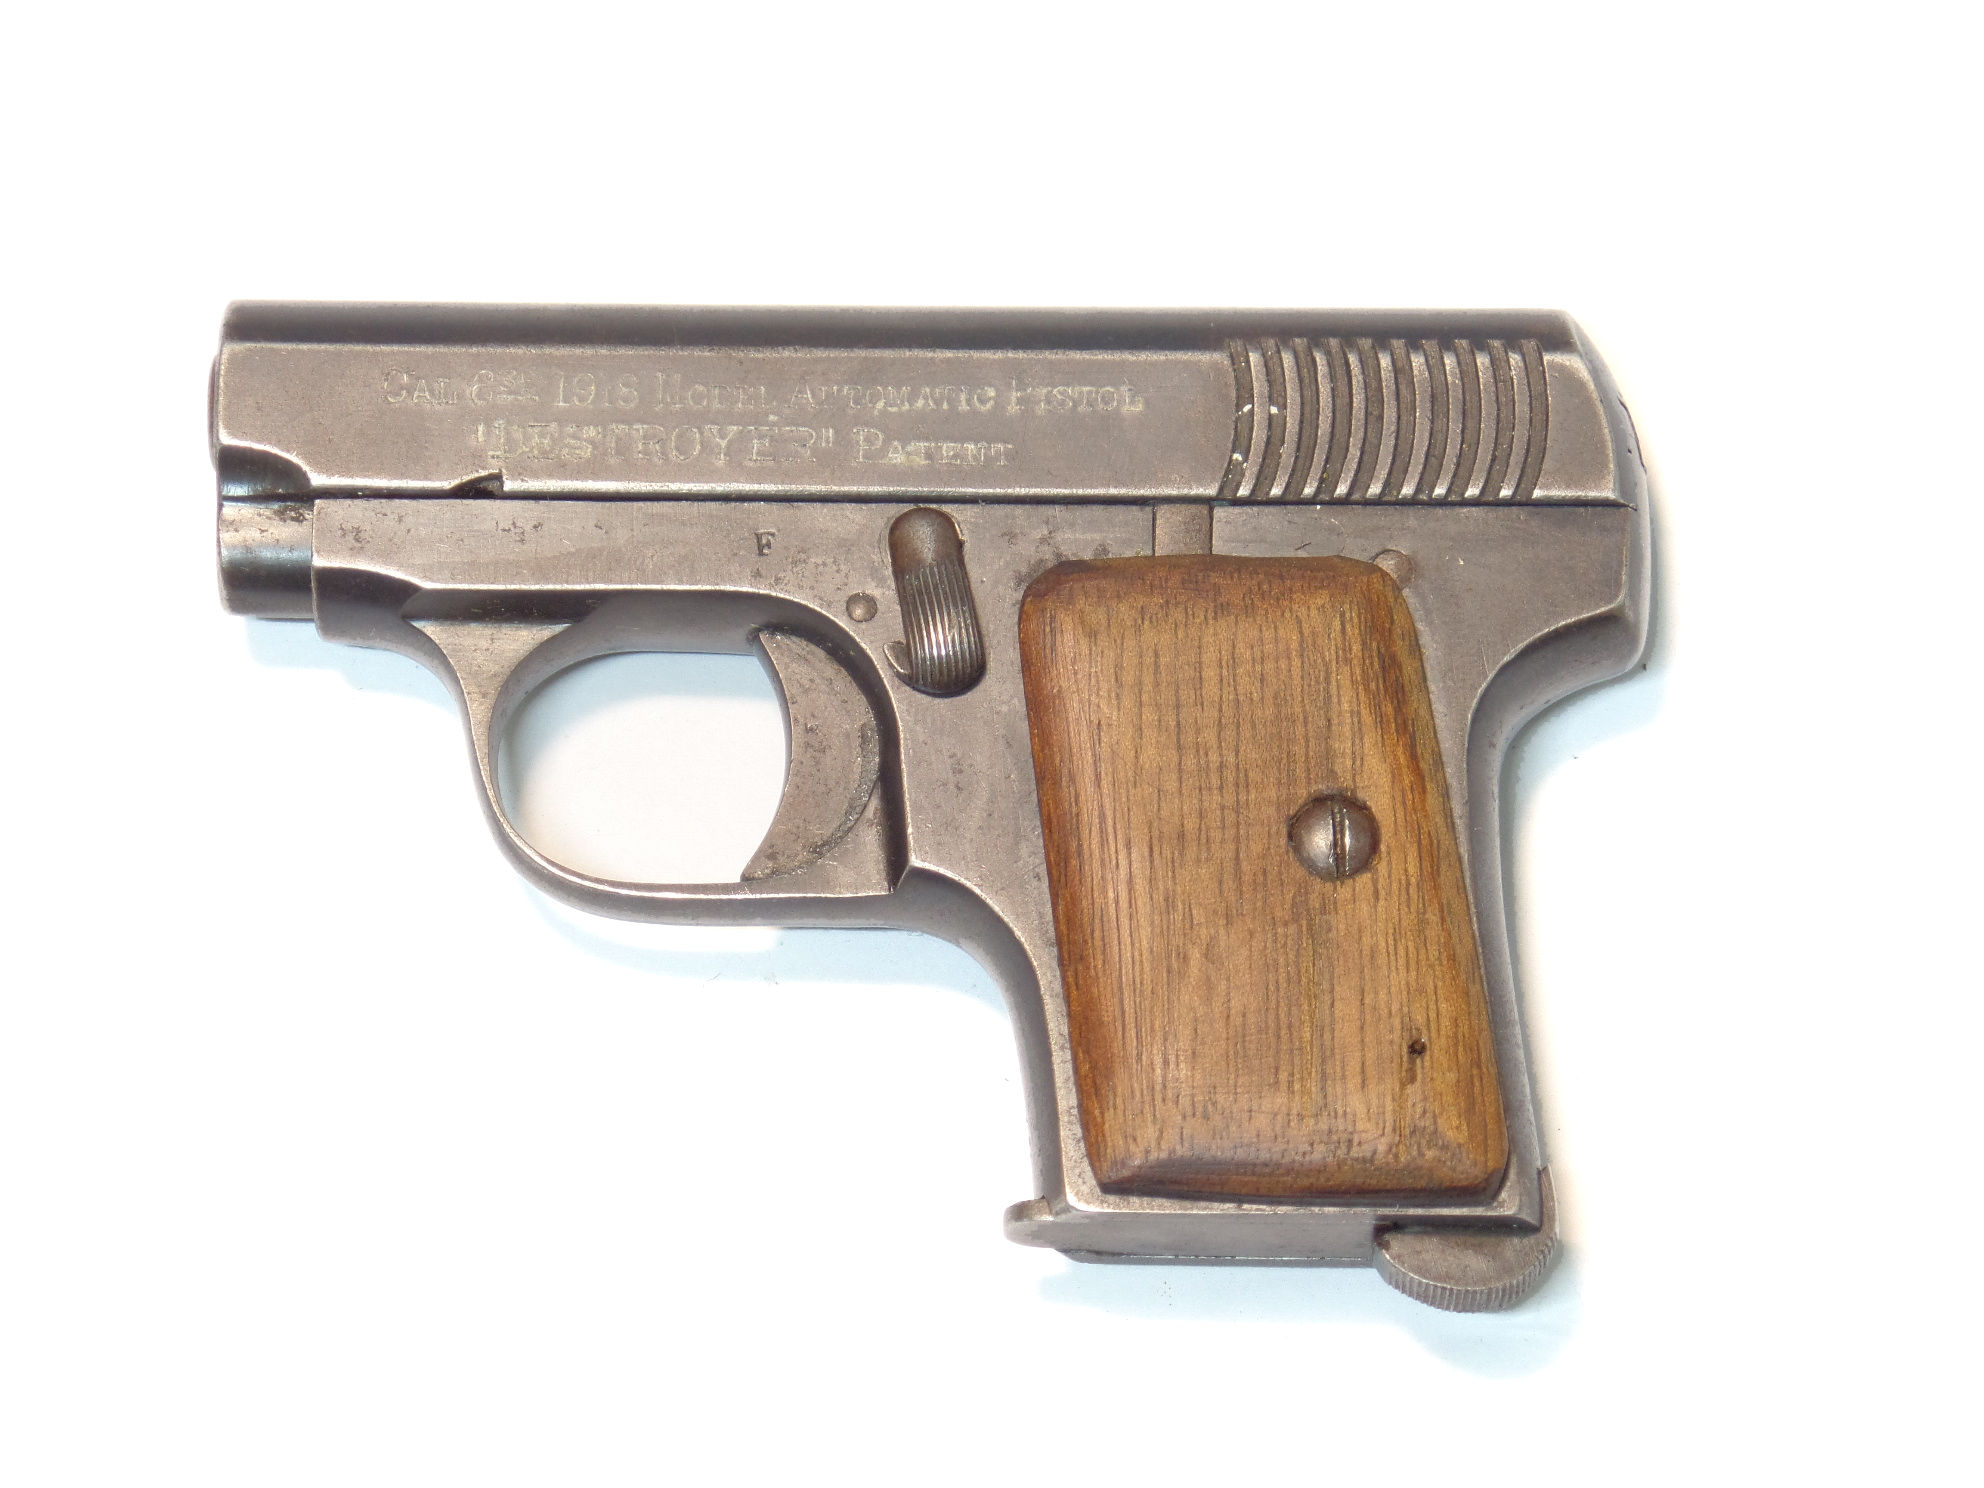 Destroyer calibre 6.35 Browning